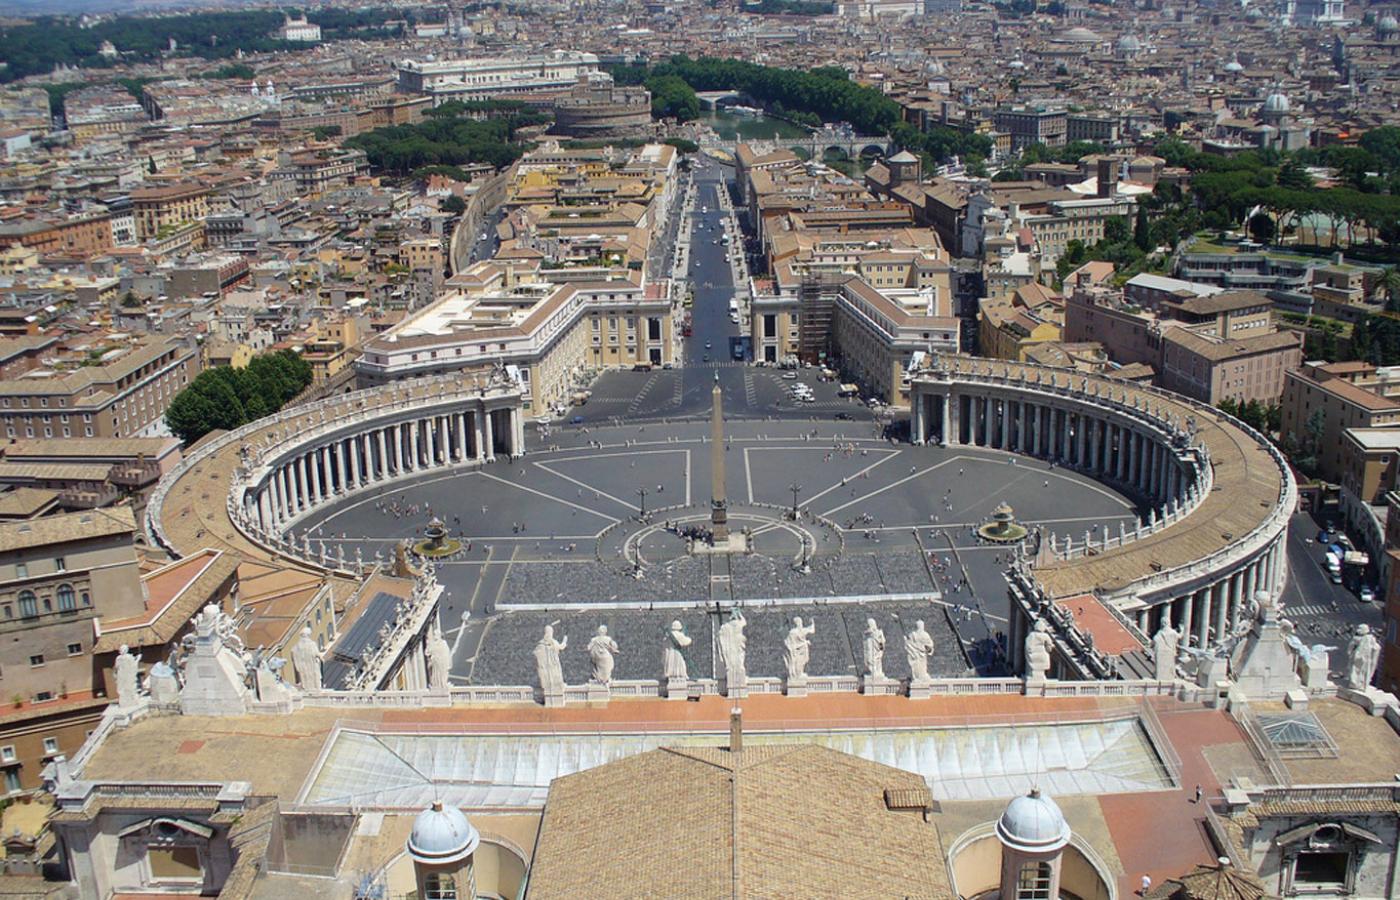 W świecie katolickim duże zainteresowanie budzi teoria spiskowa: że ciemne siły w Watykanie usunęły Benedykta, by zrobić miejsce dla antypapieża.